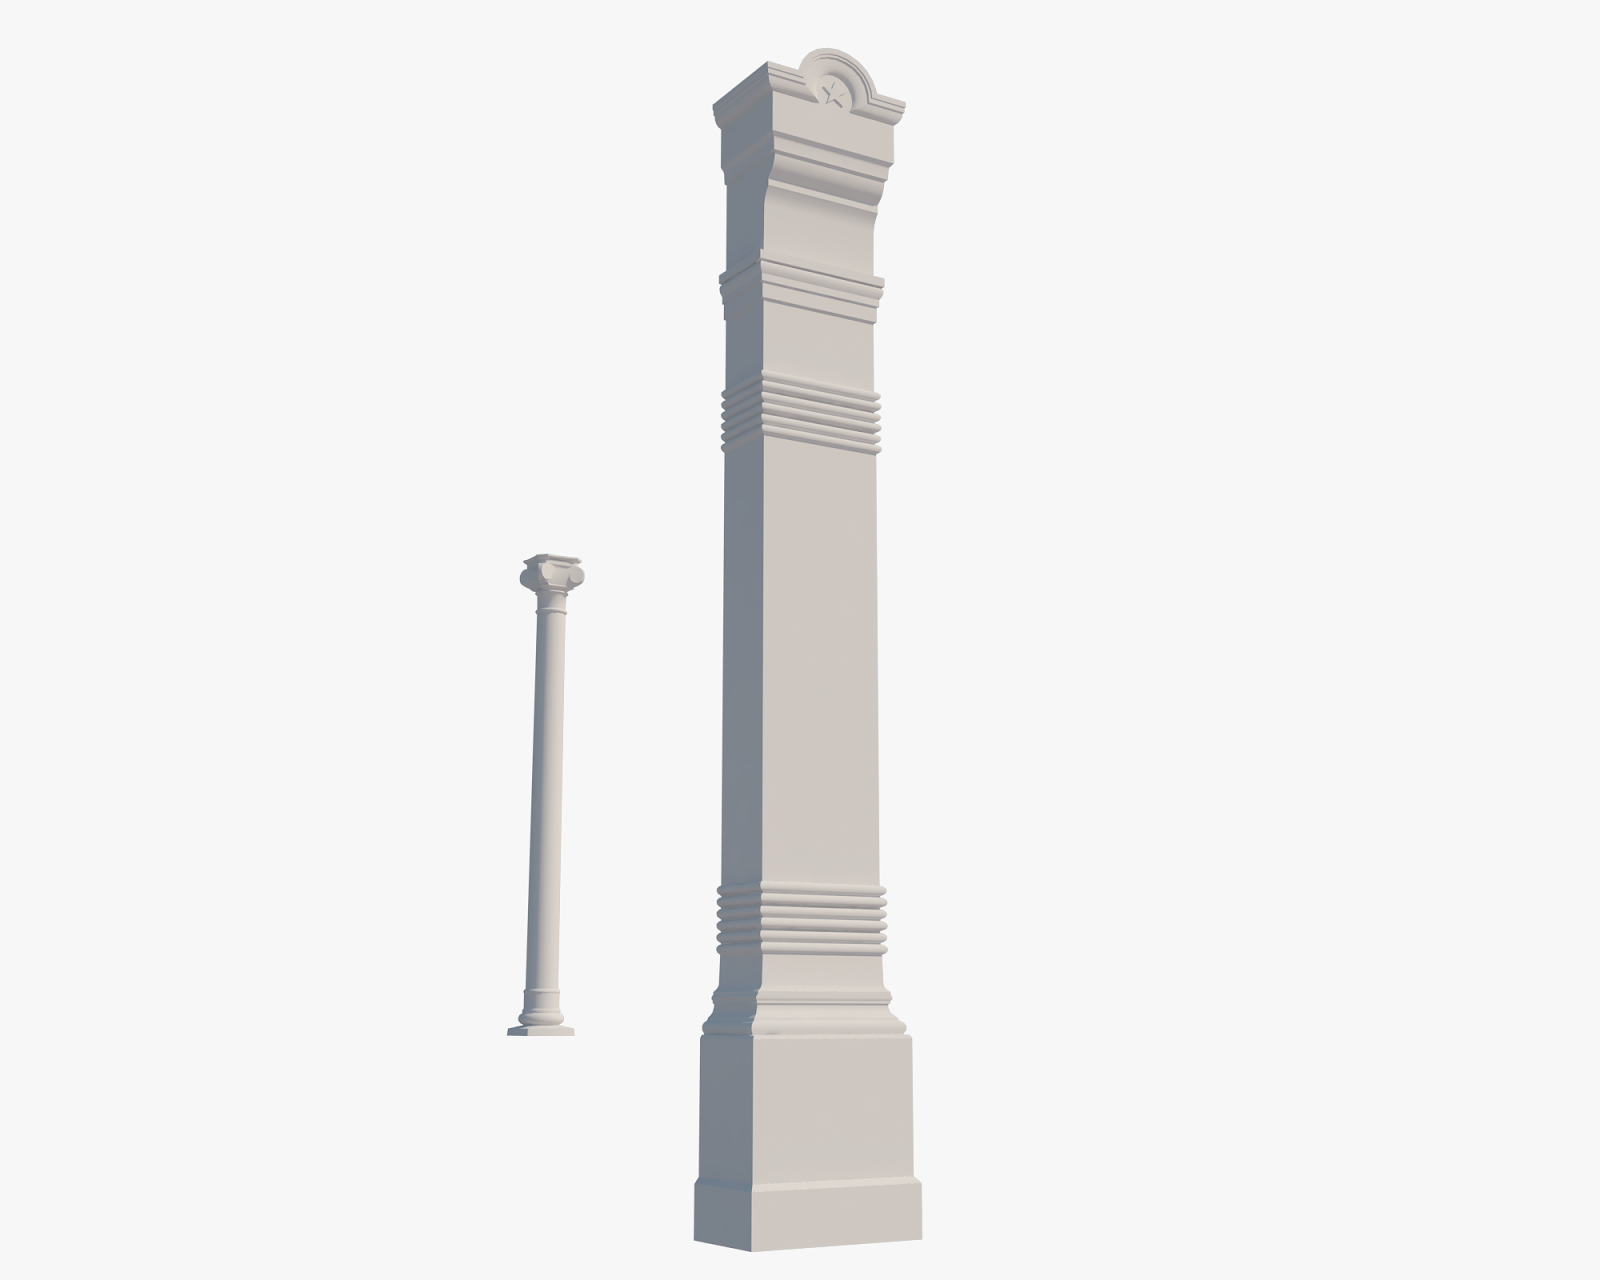 Pillar and column